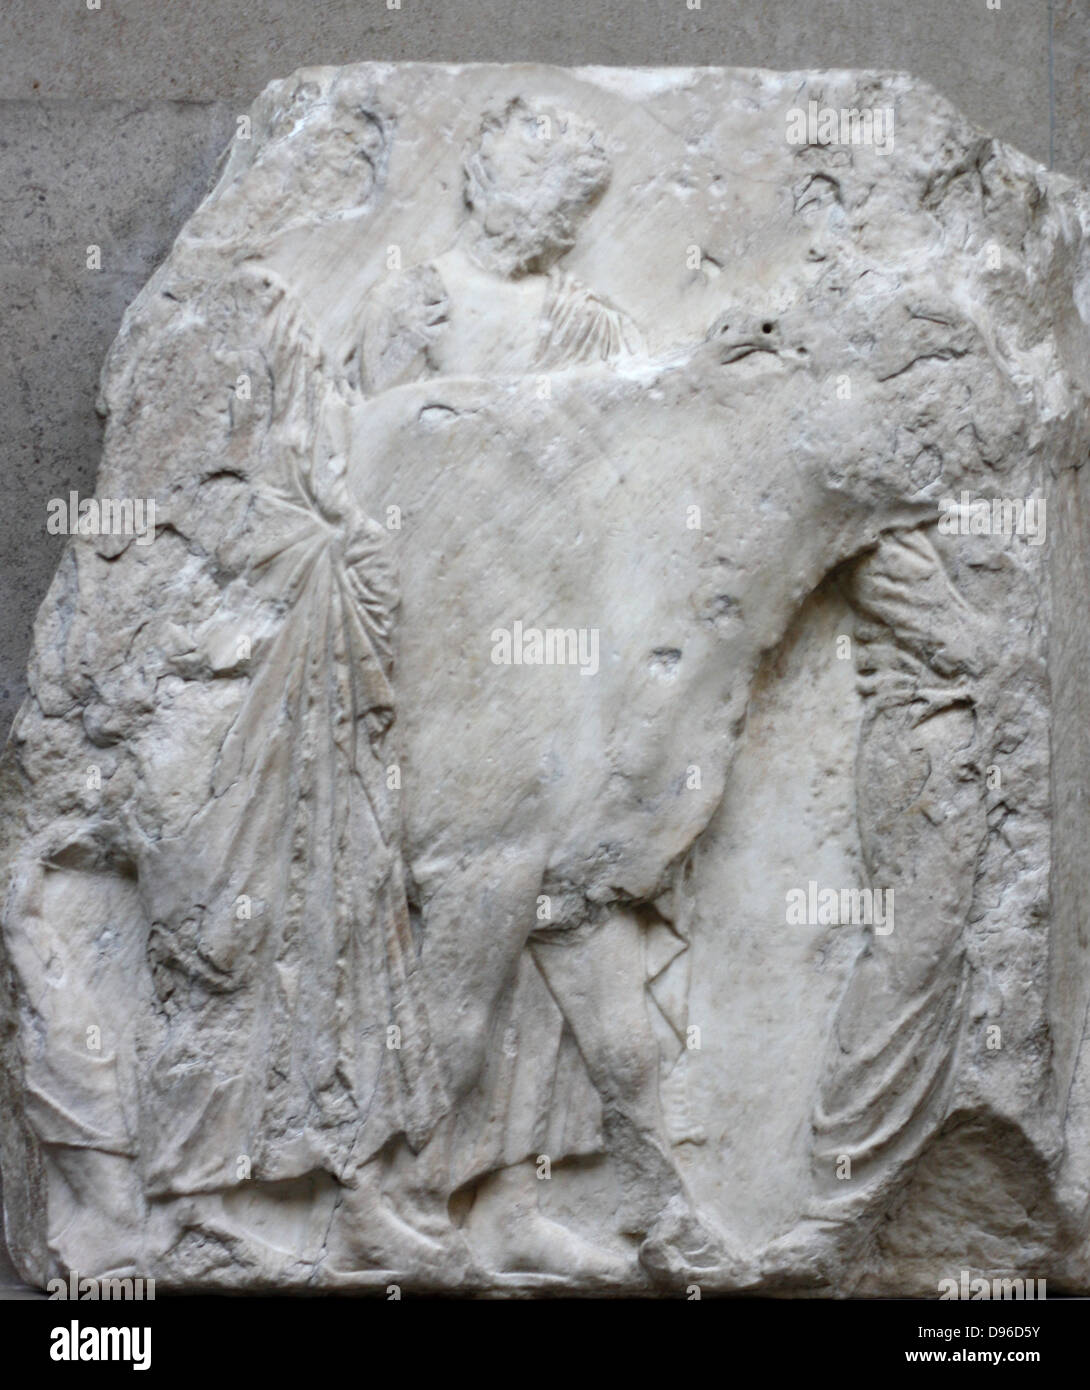 Der Parthenon-fries Detail. Griechischer Marmor Skulptur, zwischen 443-438 BC. Die vollständige Fries zeigt eine Erzählung Prozession von Männern, Frauen und Pferde. Stockfoto